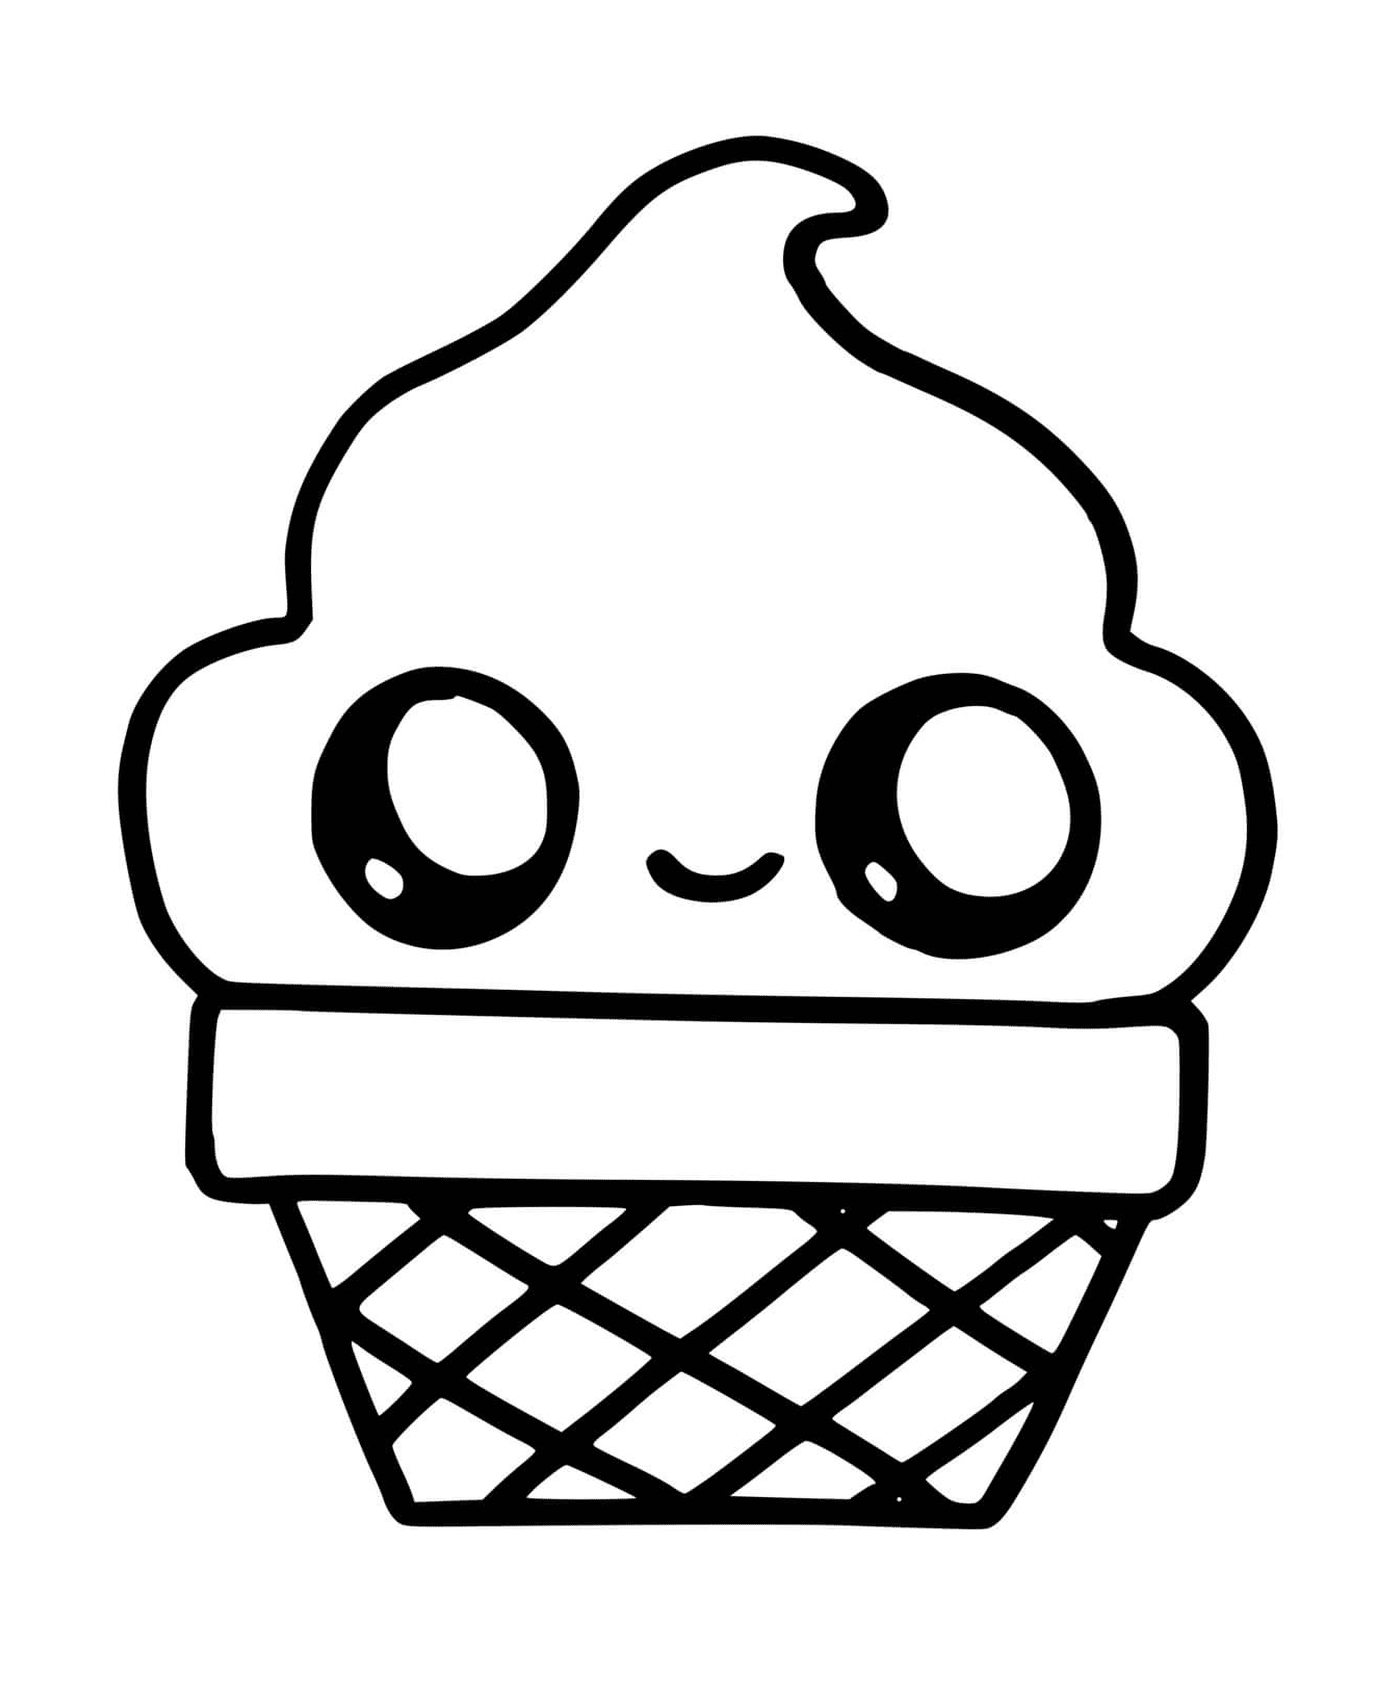  Un cono di ghiaccio con un volto sorridente disegnato su di esso 